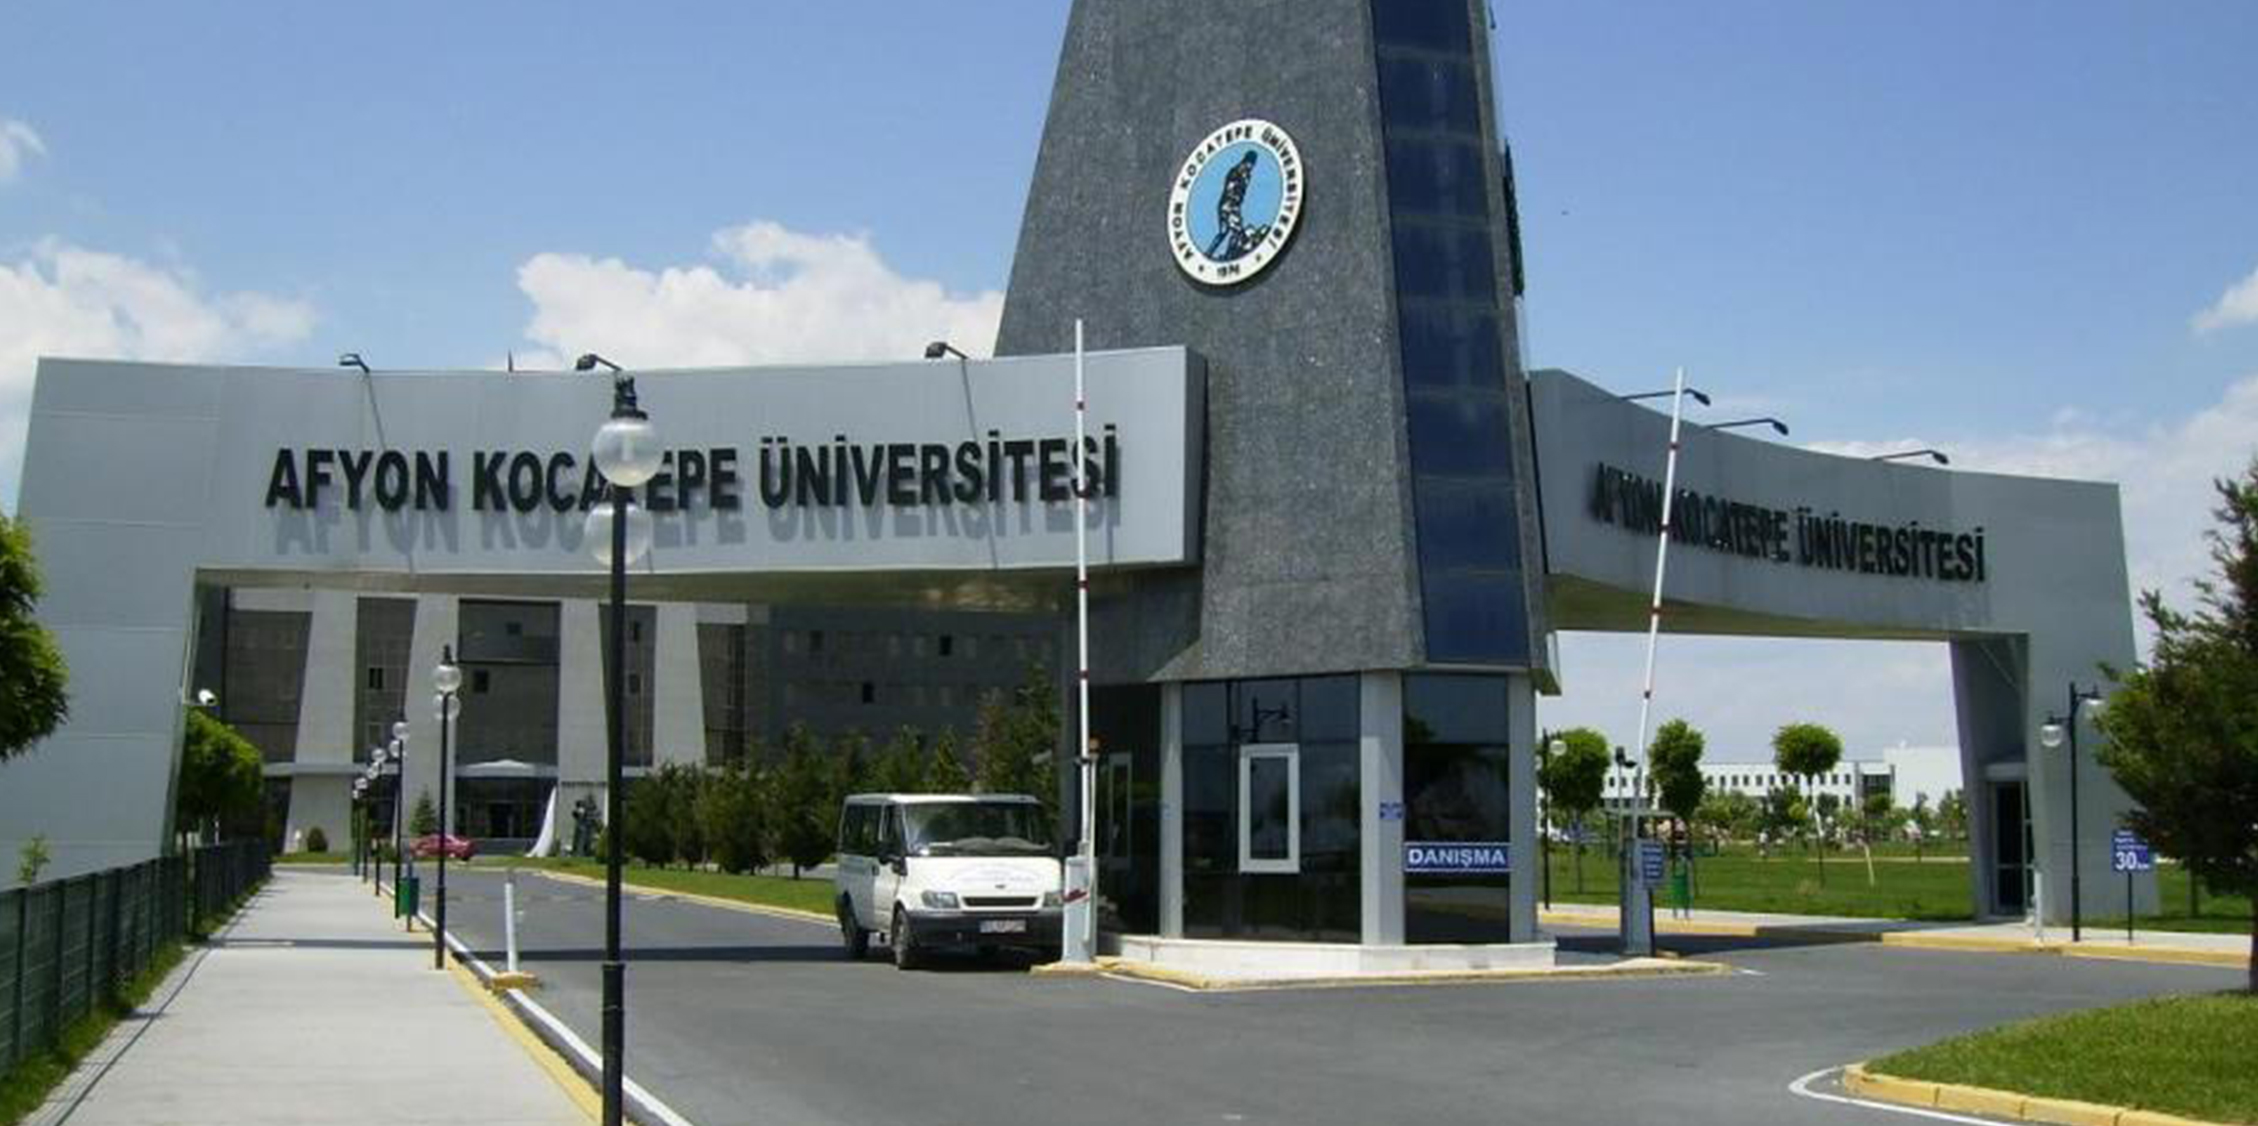 afyonkocatepe universitesi find and study 1 - L'université d'Afyon Kocatepe